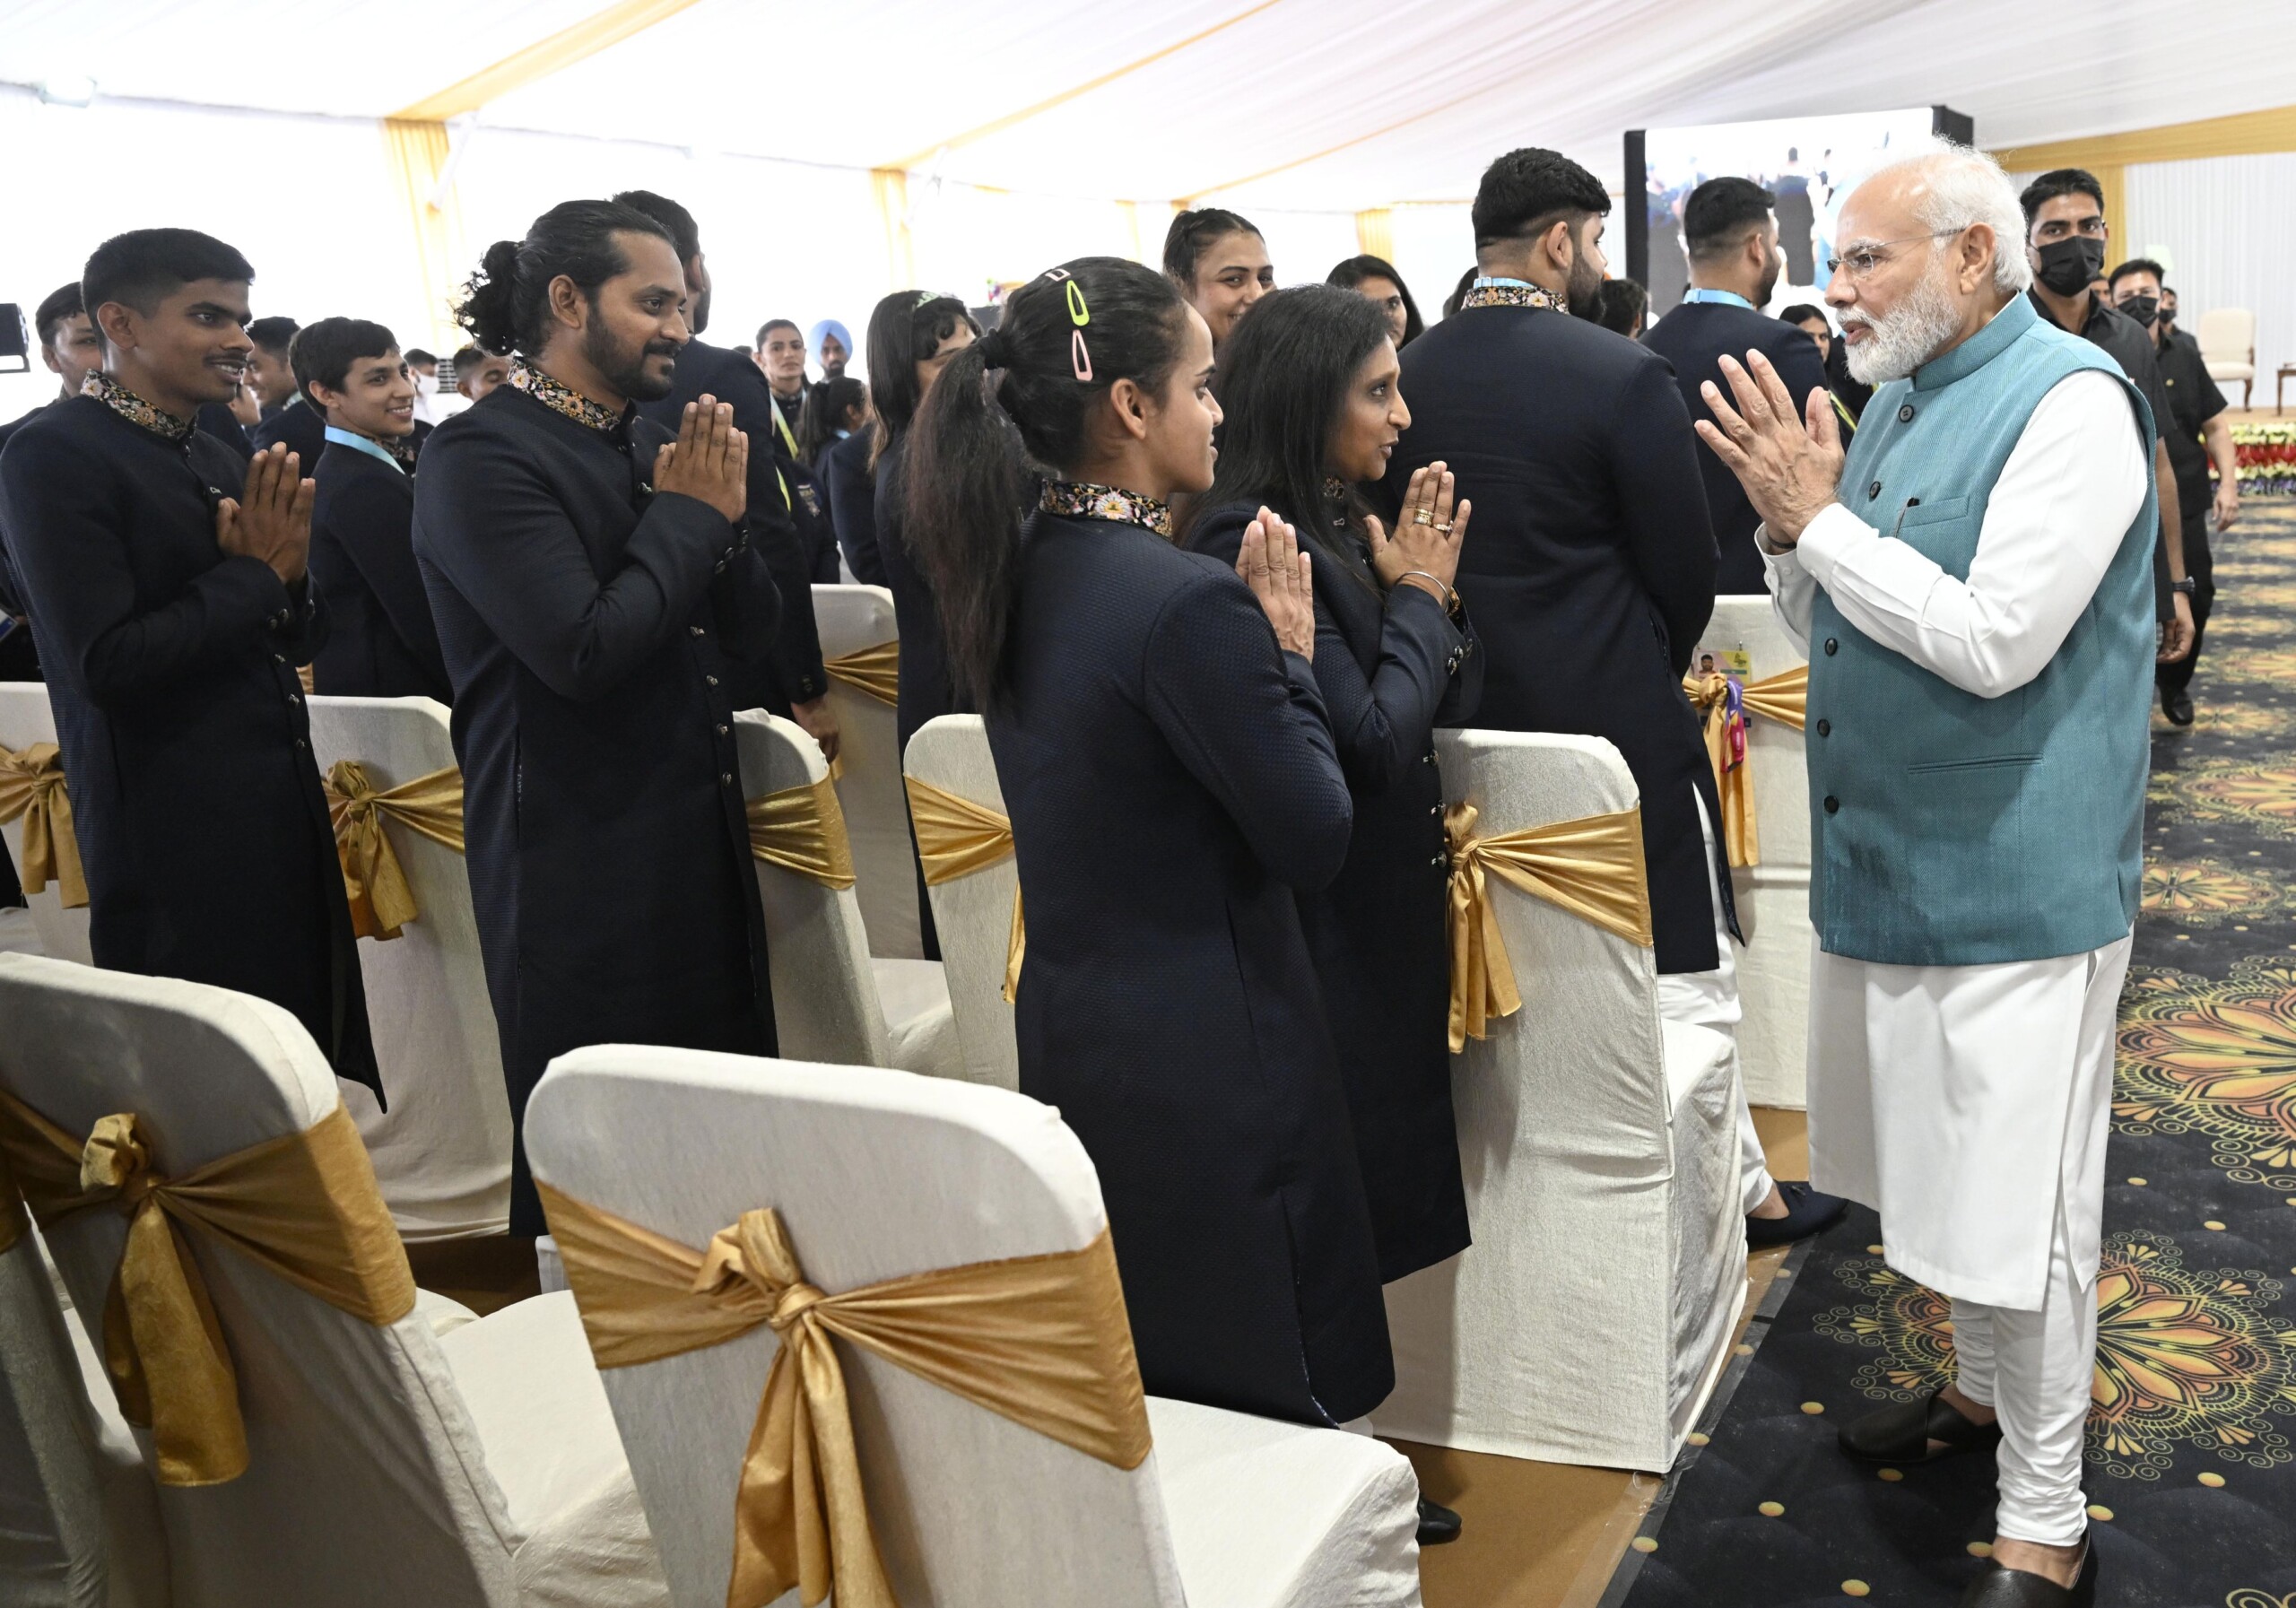 प्रधानमंत्री नरेंद्र मोदी ने कॉमनवेल्थ गेम्स में भाग लेने वाले खिलाड़ियों के साथ बातचीत की